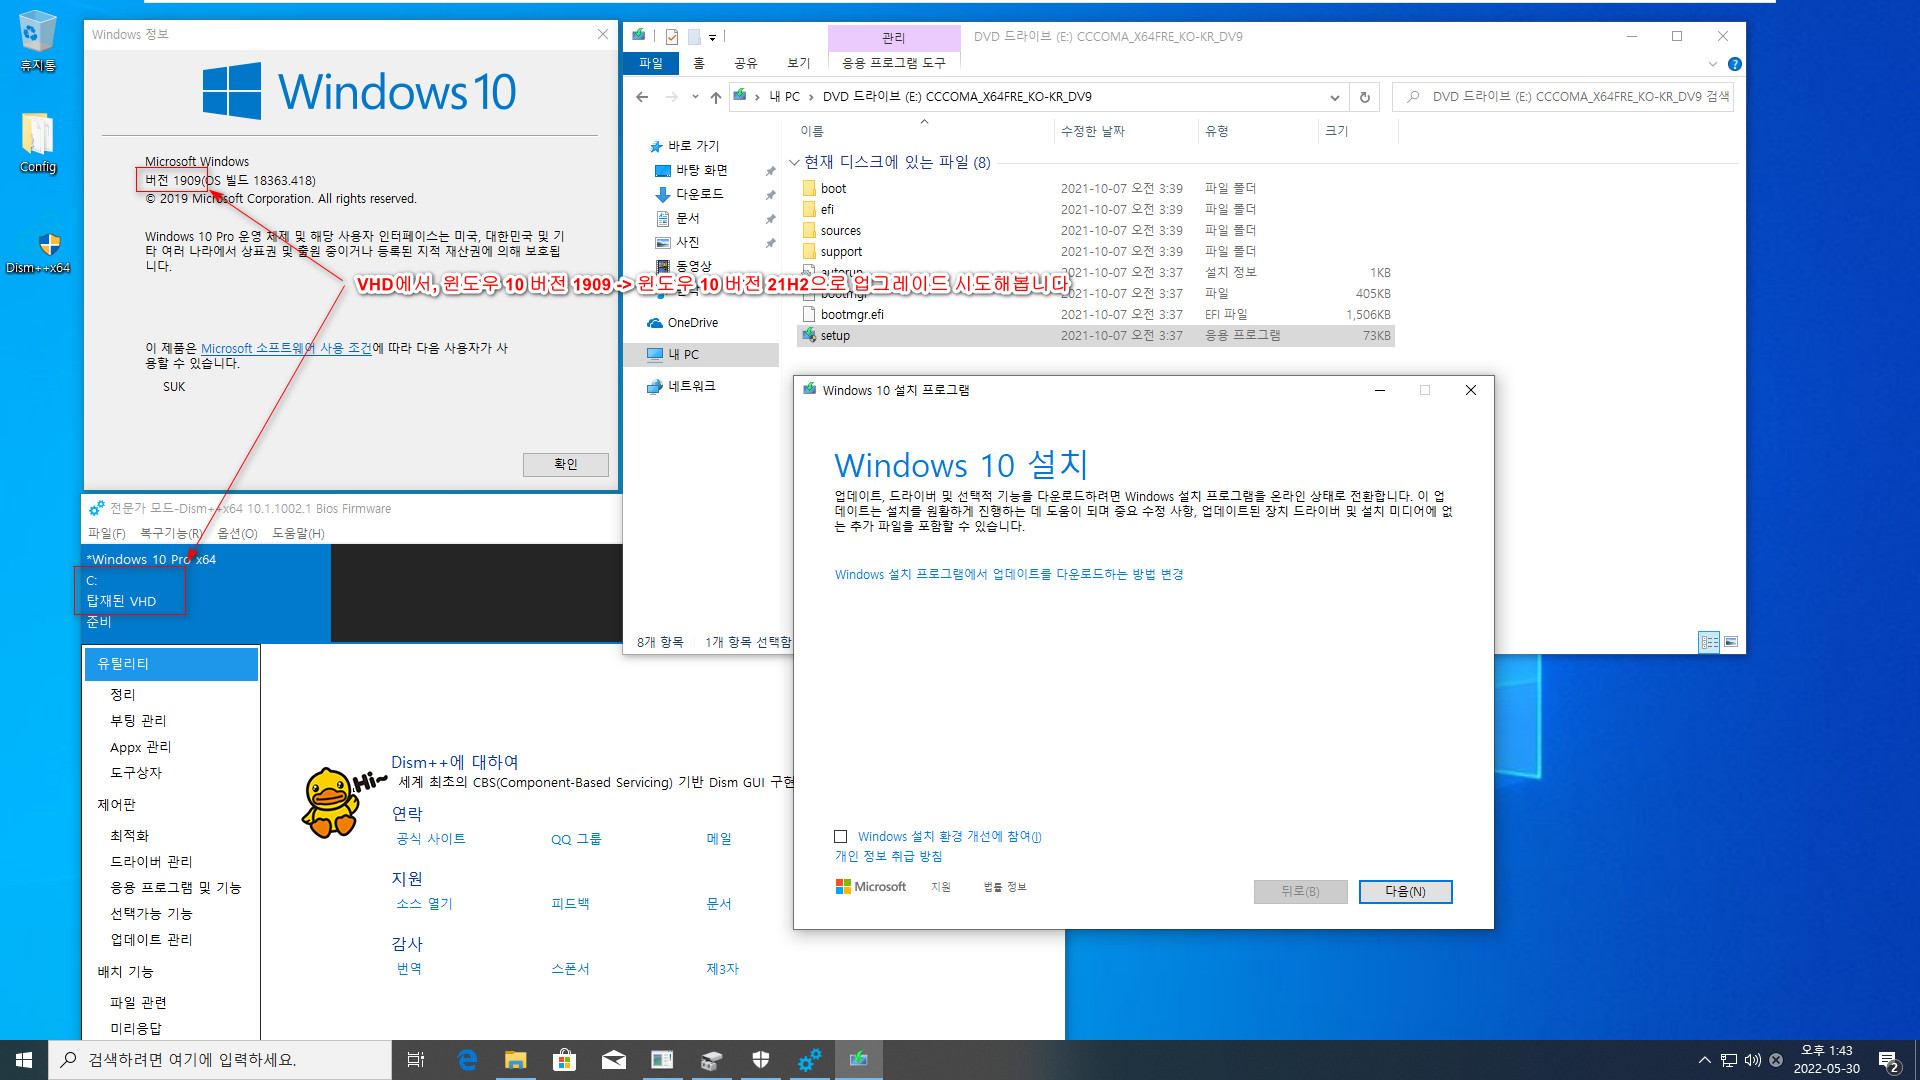 VHD에서는 윈도우 버전 업데이트가 되지 않습니다 - 참고로 윈도우 10 버전 2004부터는 윈도우 + 누적 업데이트까지 같기 때문에 VHD에서도 버전 업데이트가 됩니다 2022-05-30_134357.jpg